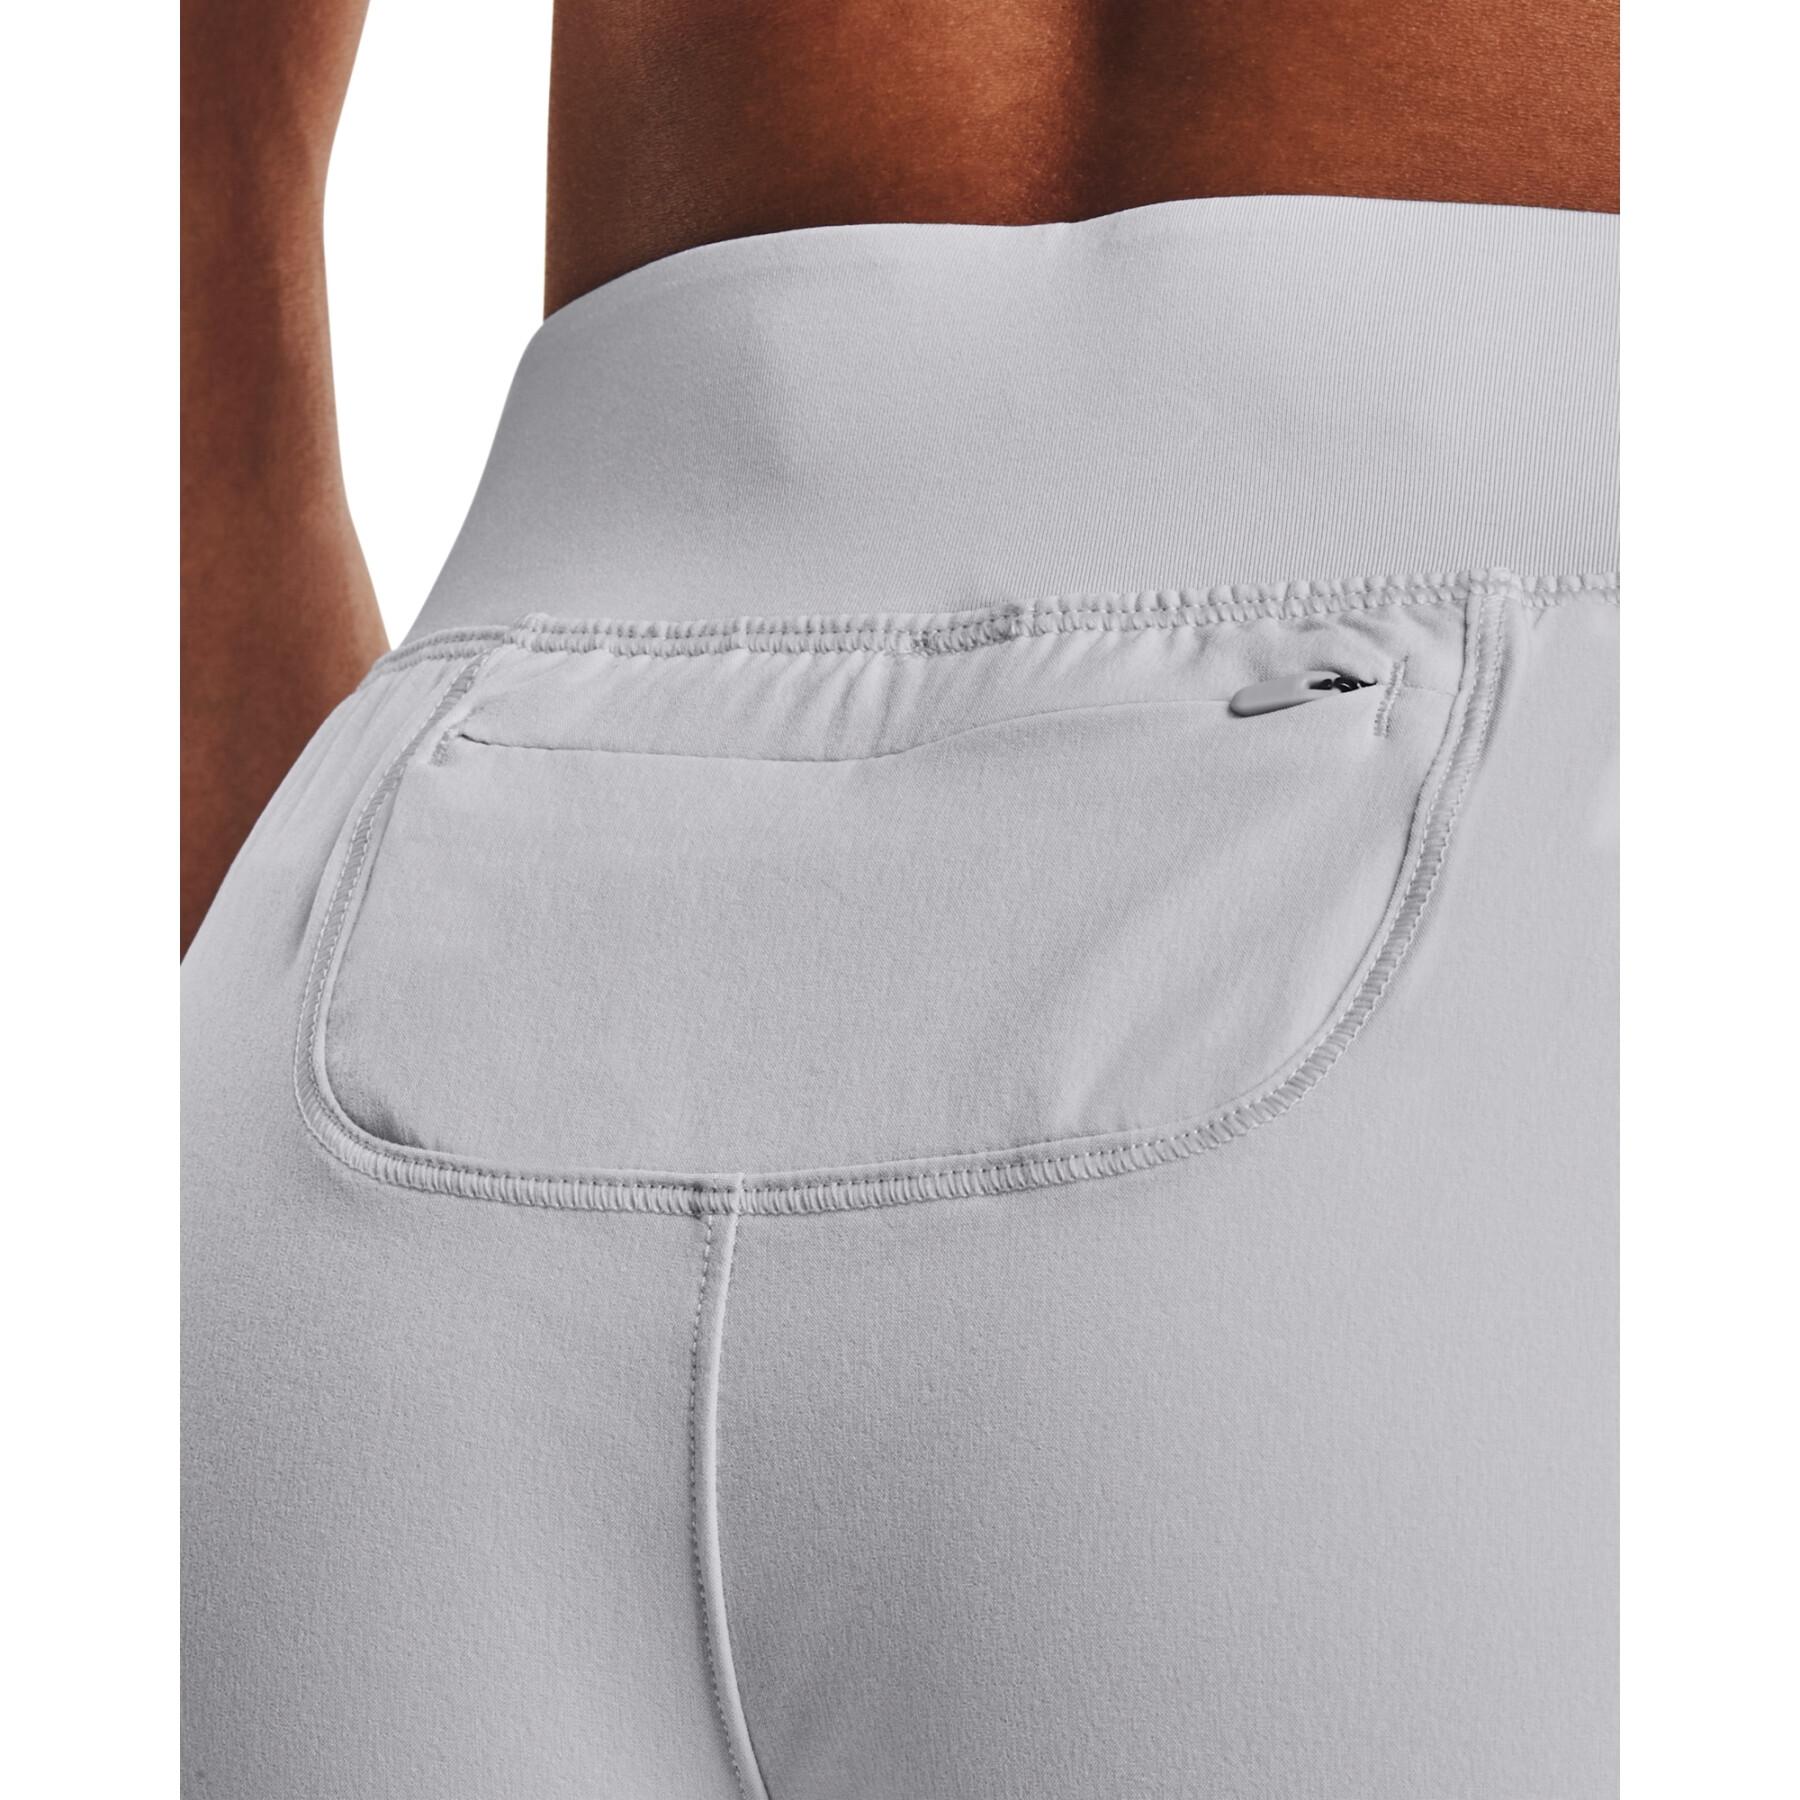 Pantalones cortos de mujer Under Armour Qlifier Speedpocket